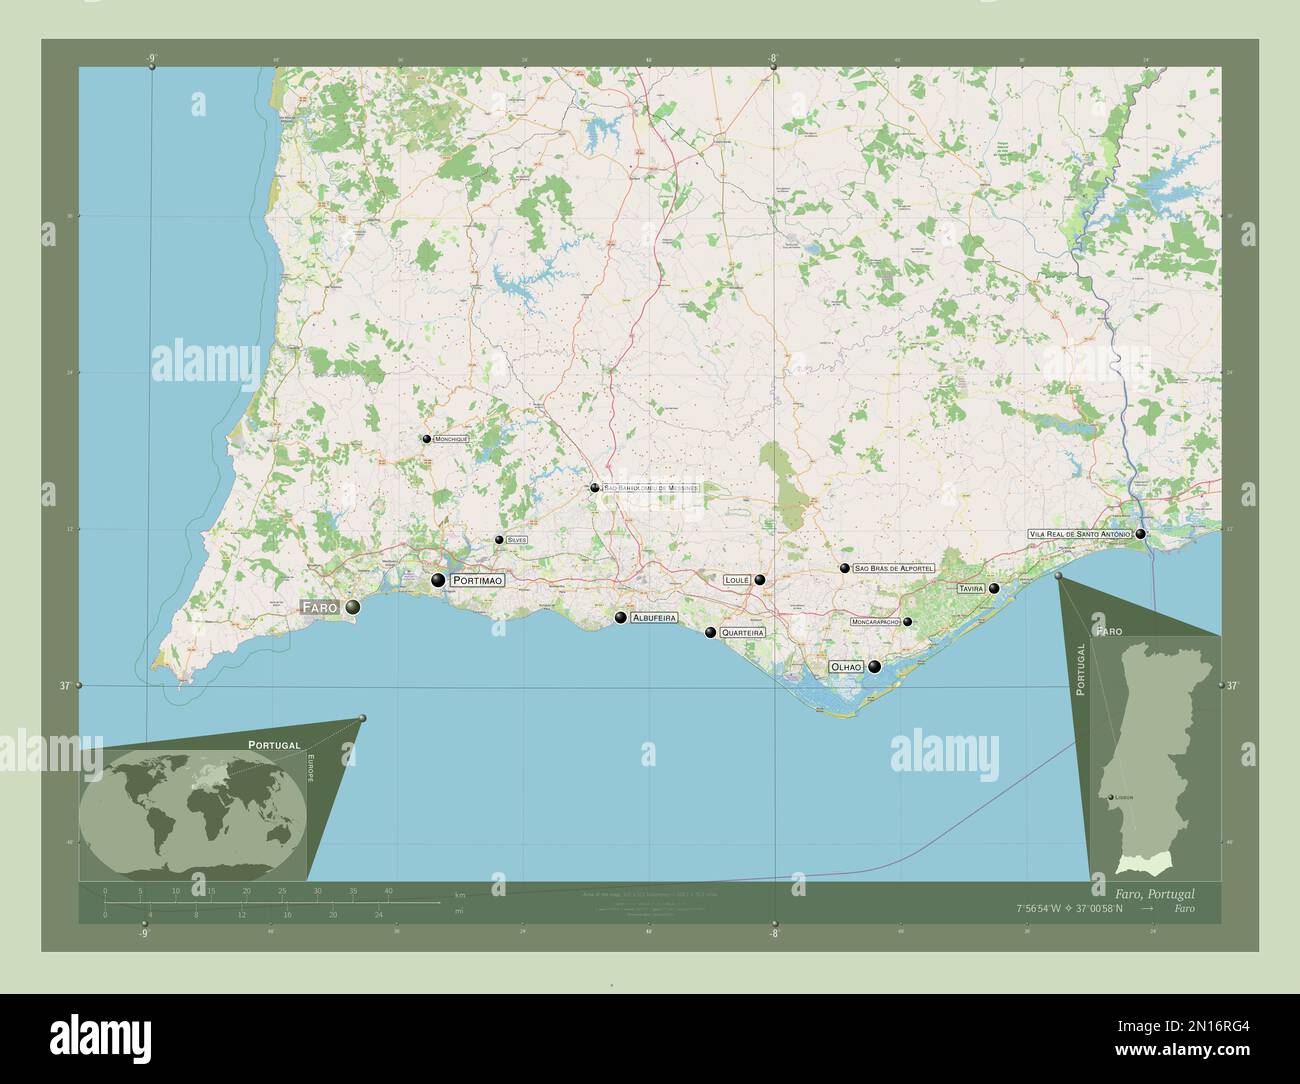 Faro, der Bezirk von Portugal. Straßenkarte Öffnen. Standorte und Namen der wichtigsten Städte der Region. Eckkarten für zusätzliche Standorte Stockfoto